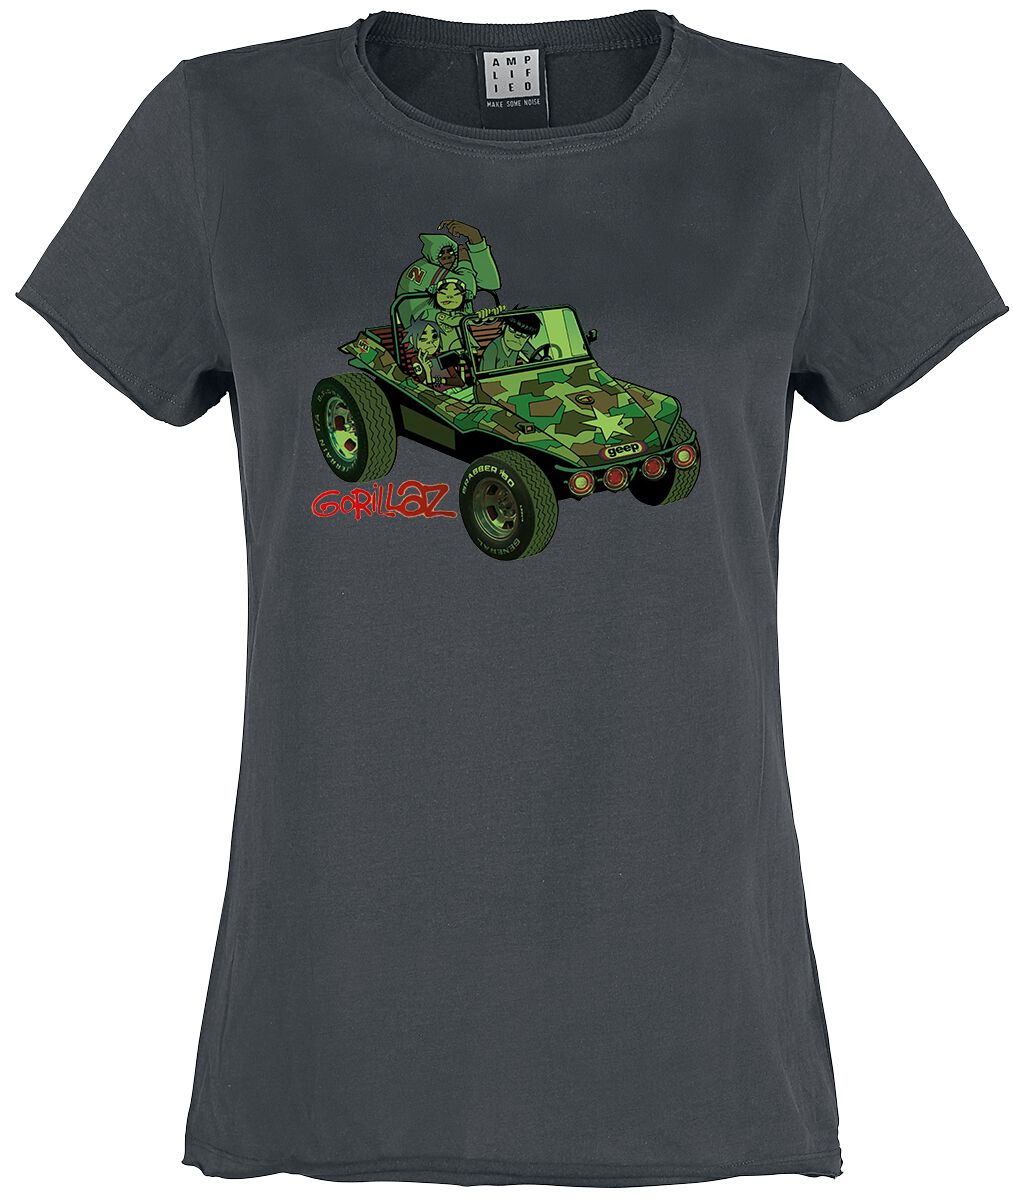 Gorillaz T-Shirt - Amplified Collection - Geep - S bis XL - für Damen - Größe XL - charcoal  - Lizenziertes Merchandise!